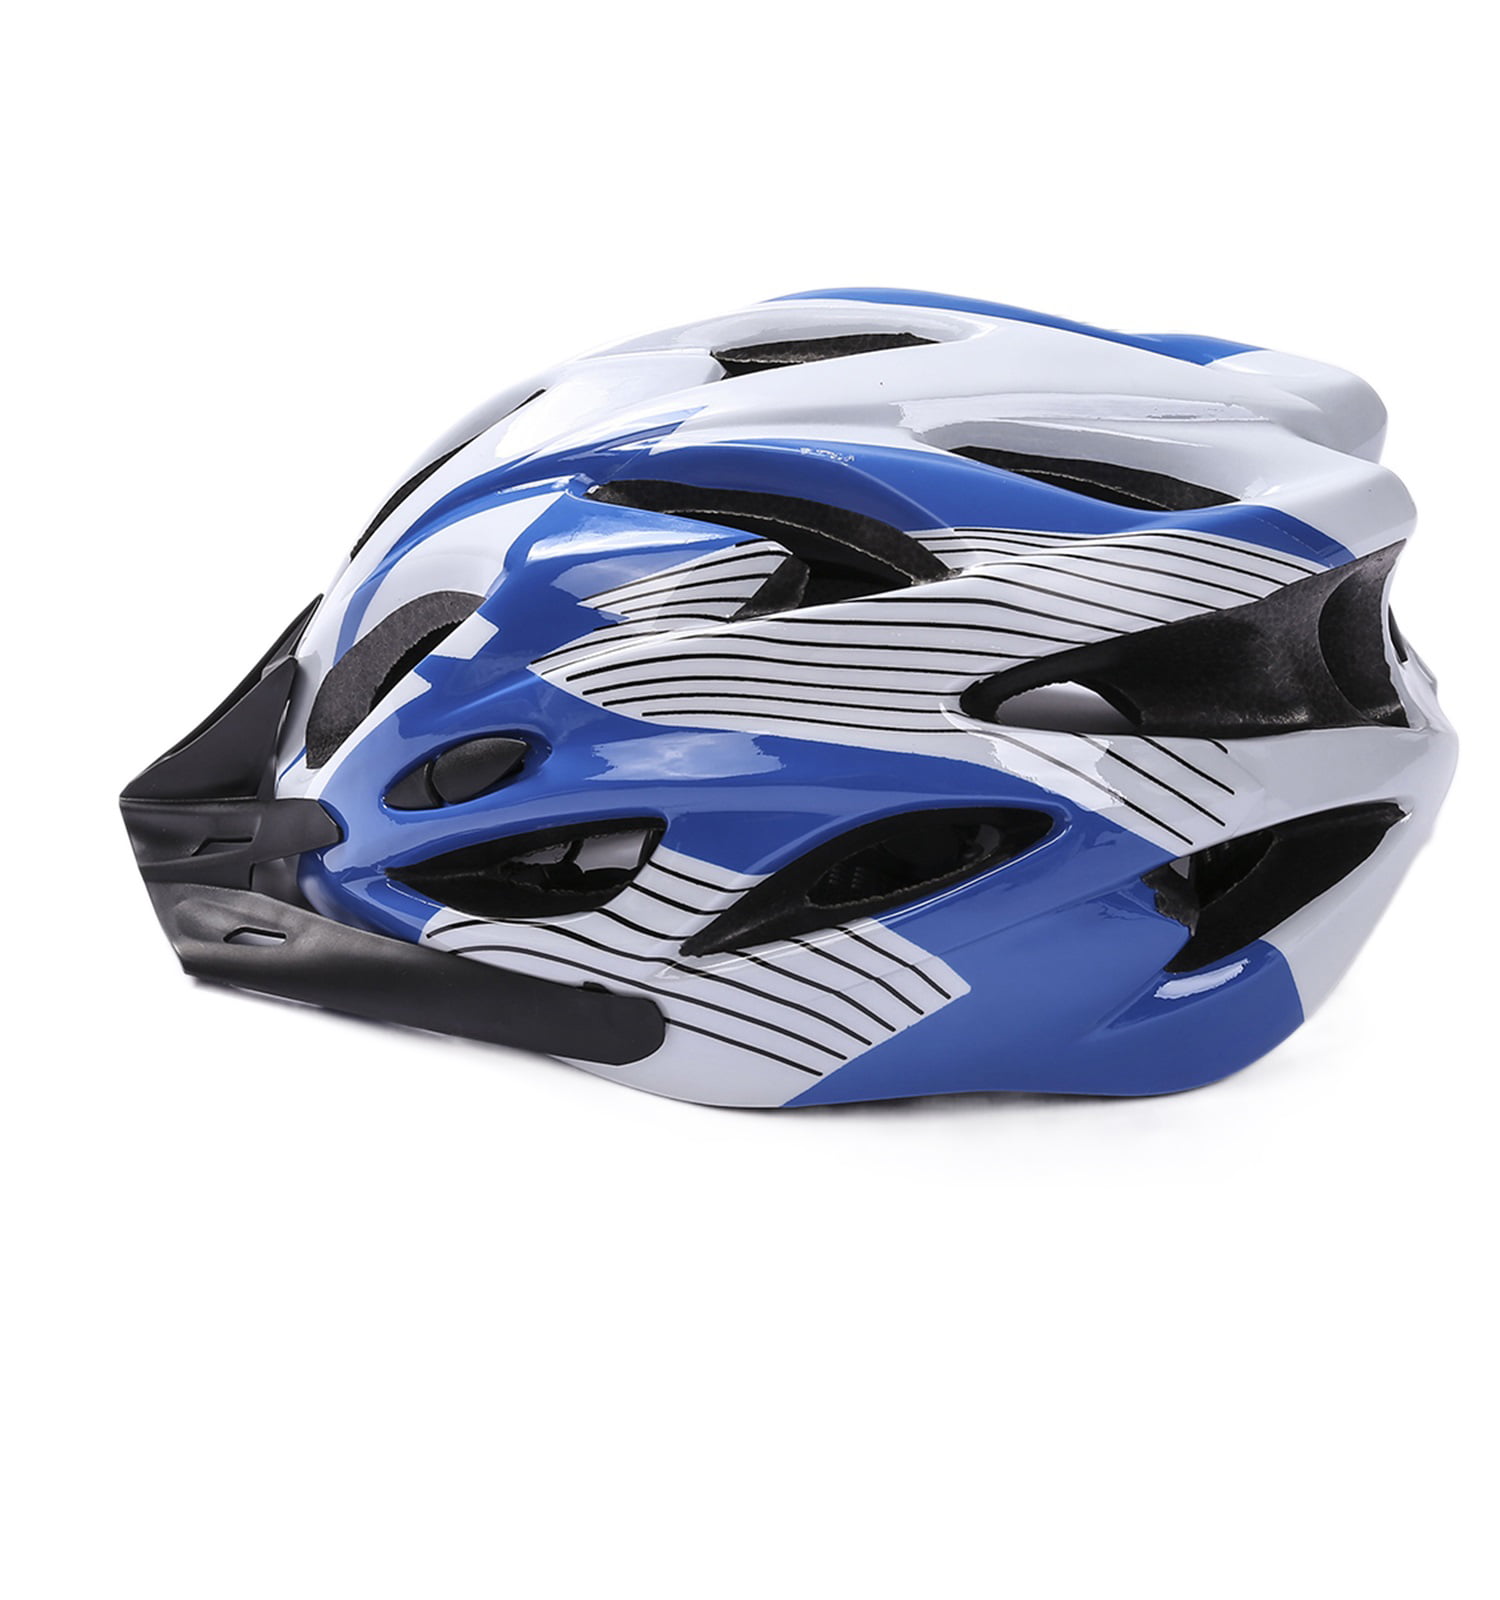 Adult Bicycle Helmet Road/XC Bike Adjustable Safety Outdoor Sport Shockproof Cap 